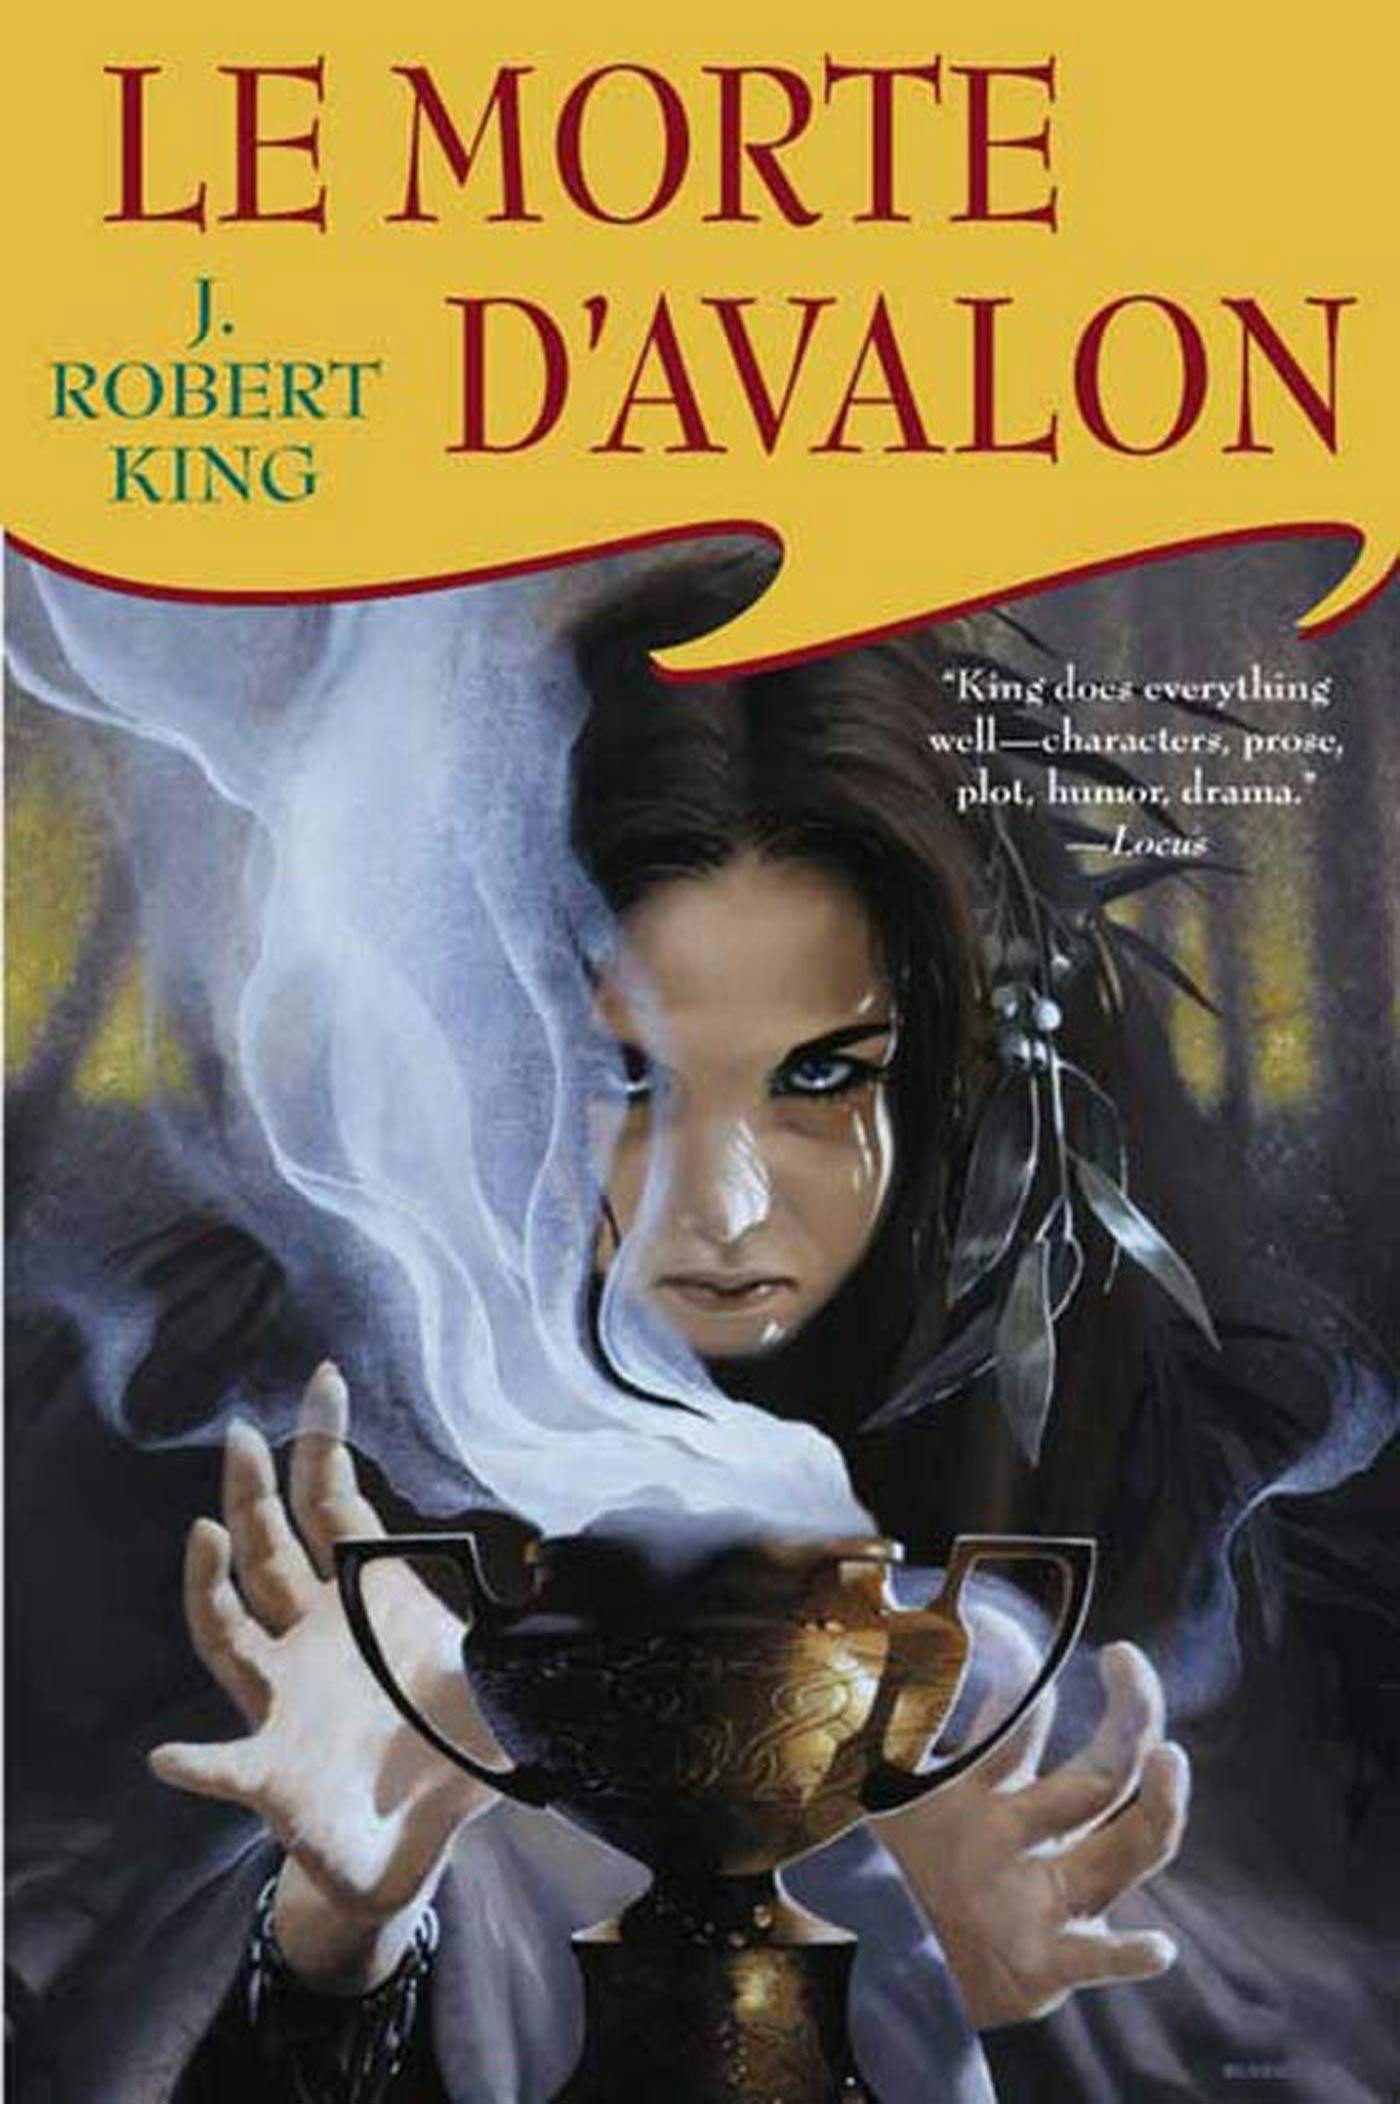 Le Morte D'Avalon